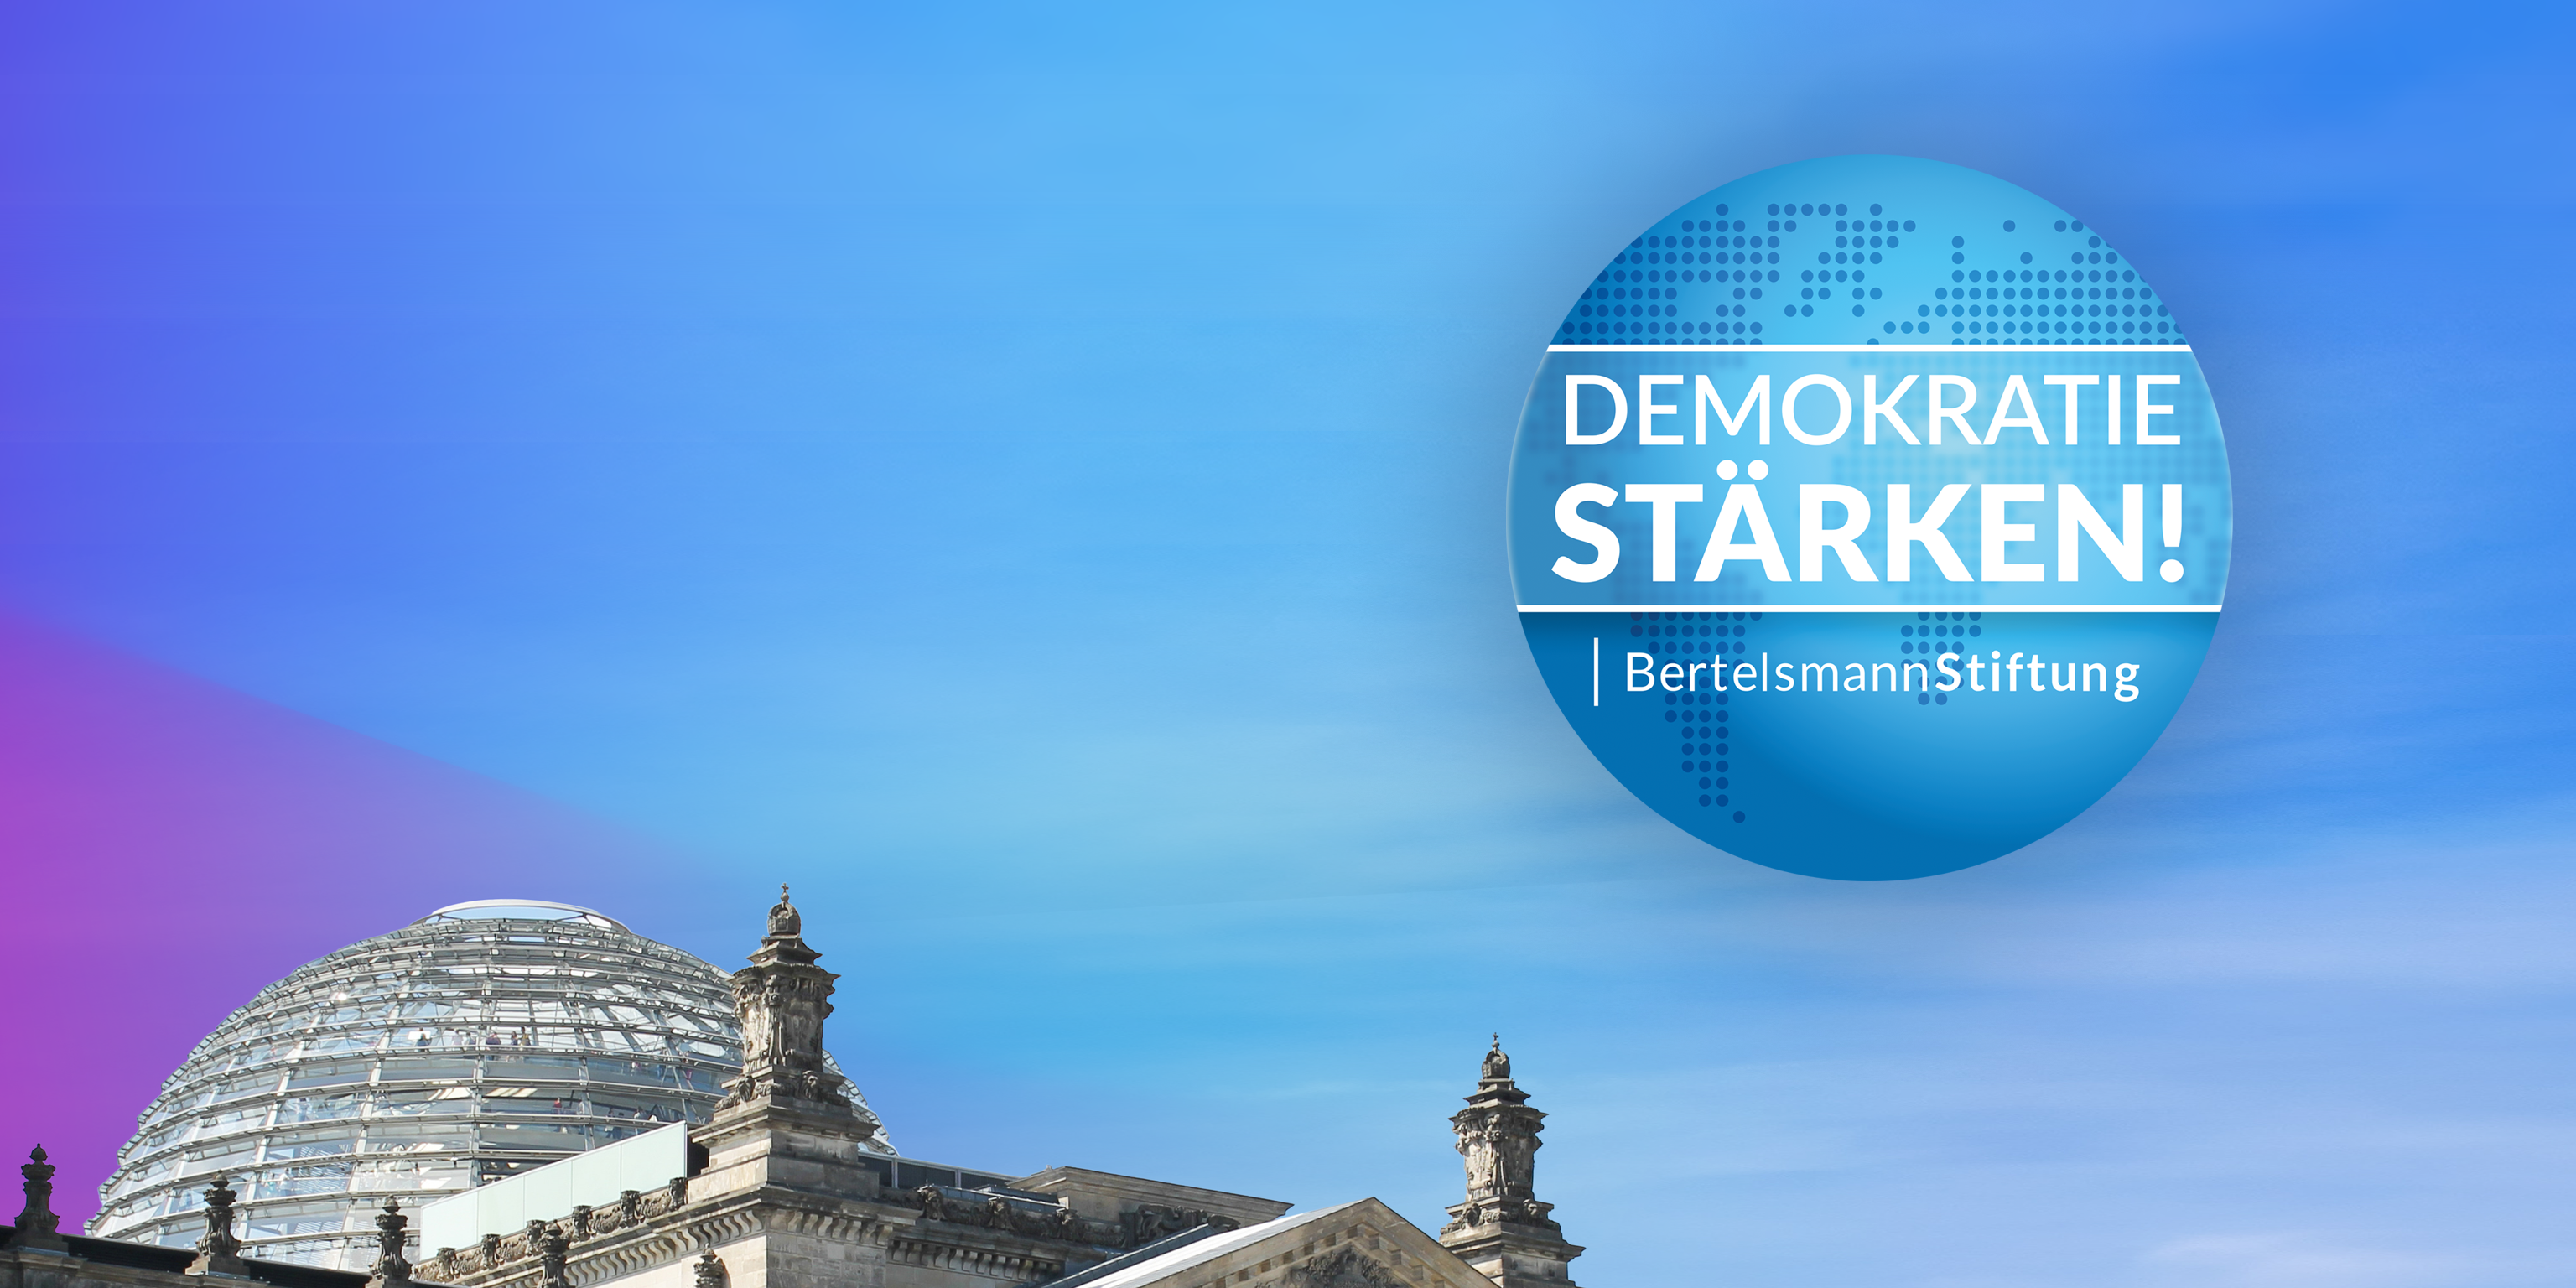 Auftakt mit dem Bundeskanzler: Bertelsmann Stiftung präsentiert Jahresthema "Demokratie stärken!"